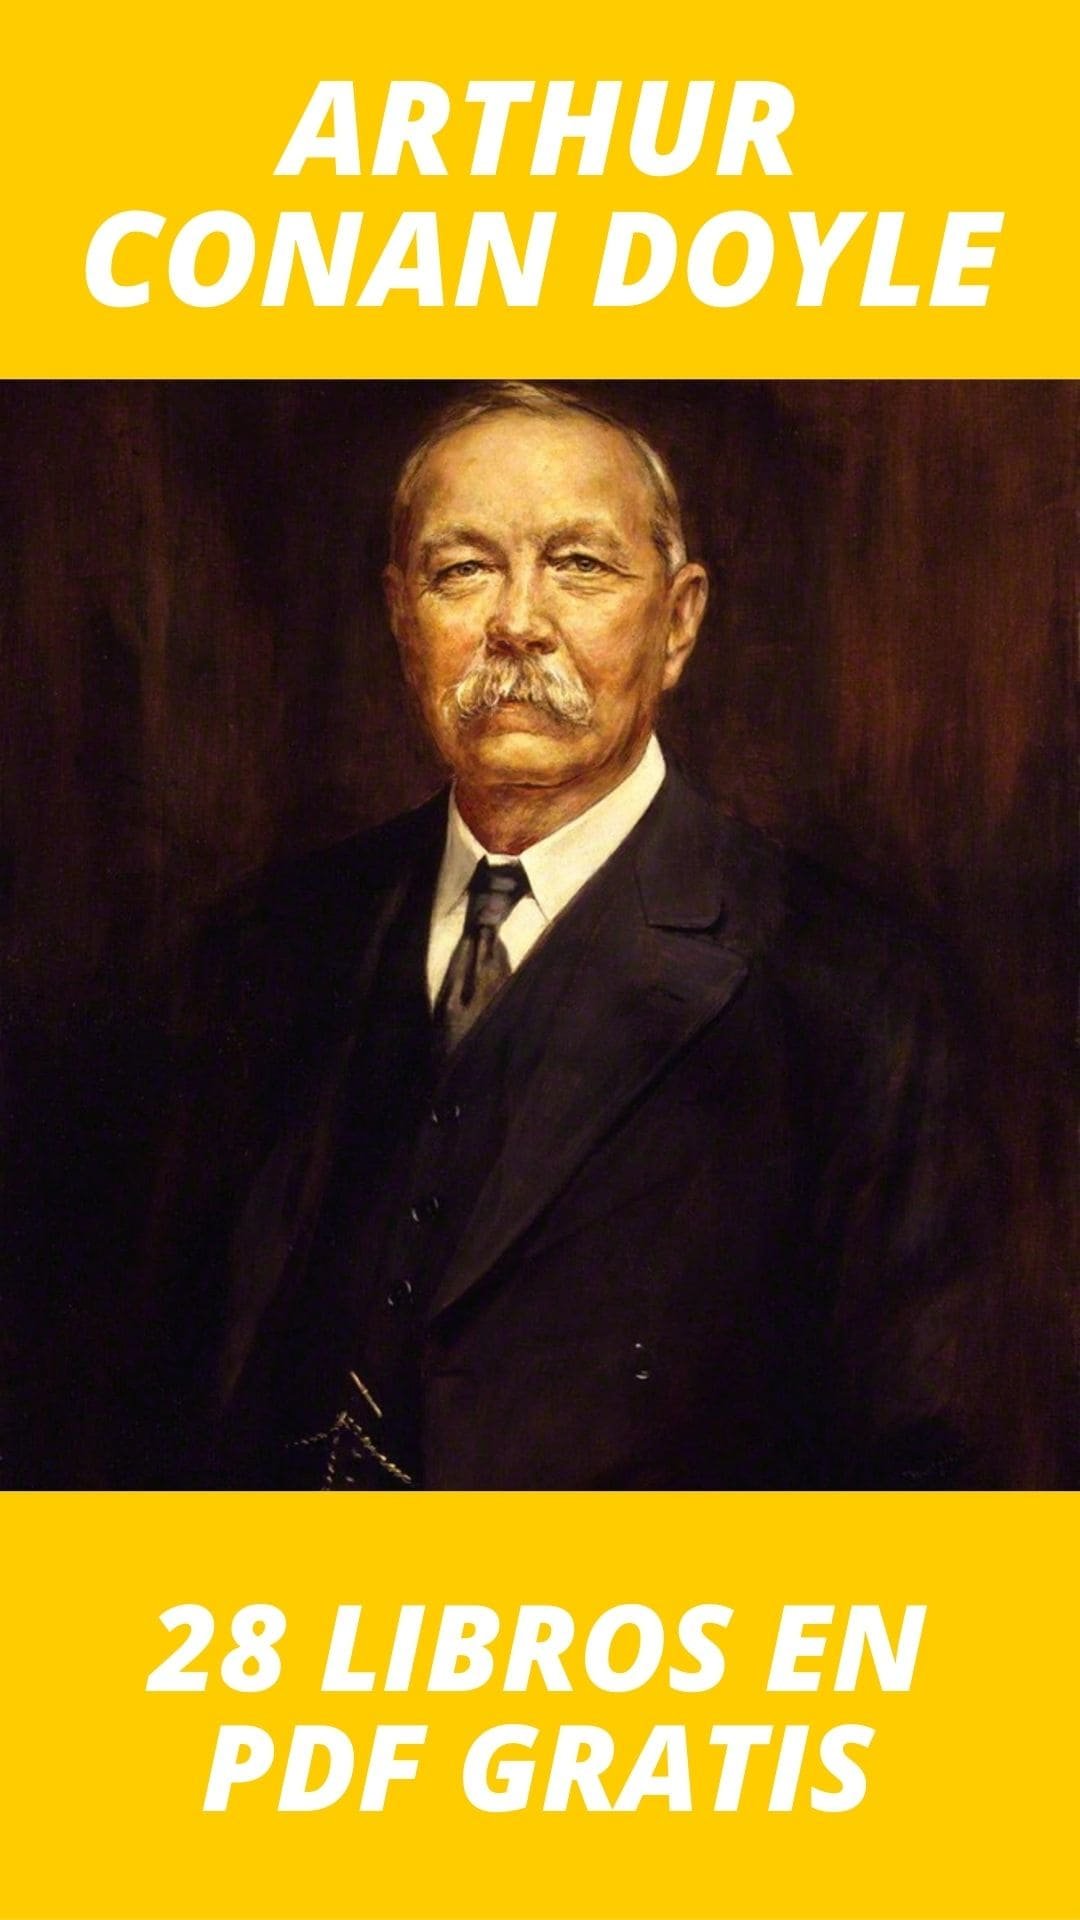 Libros de Sir Arthur Conan Doyle Gratis en PDF